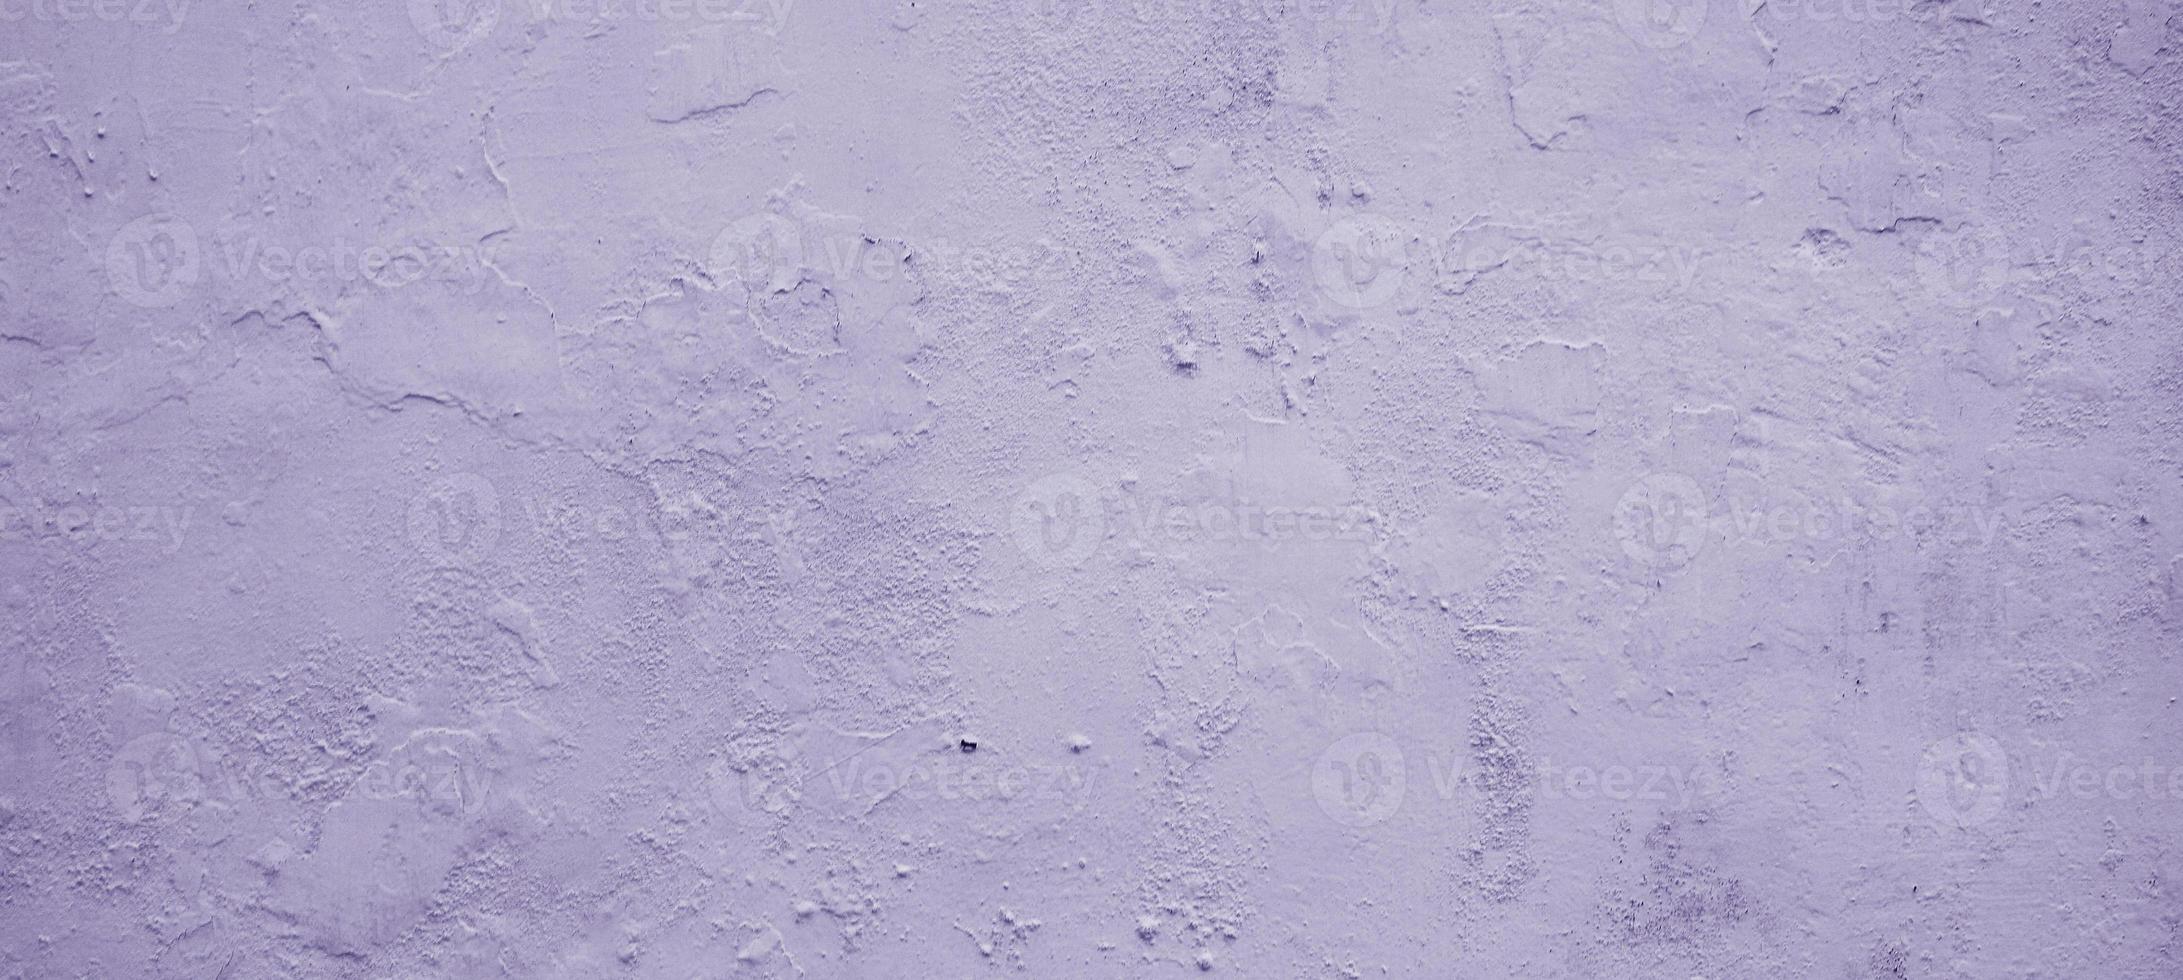 Grunge-Zementtapete., Stuckwandhintergrund, anthrazitfarbene Steinbetonstruktur, Betonwand als Hintergrund. foto